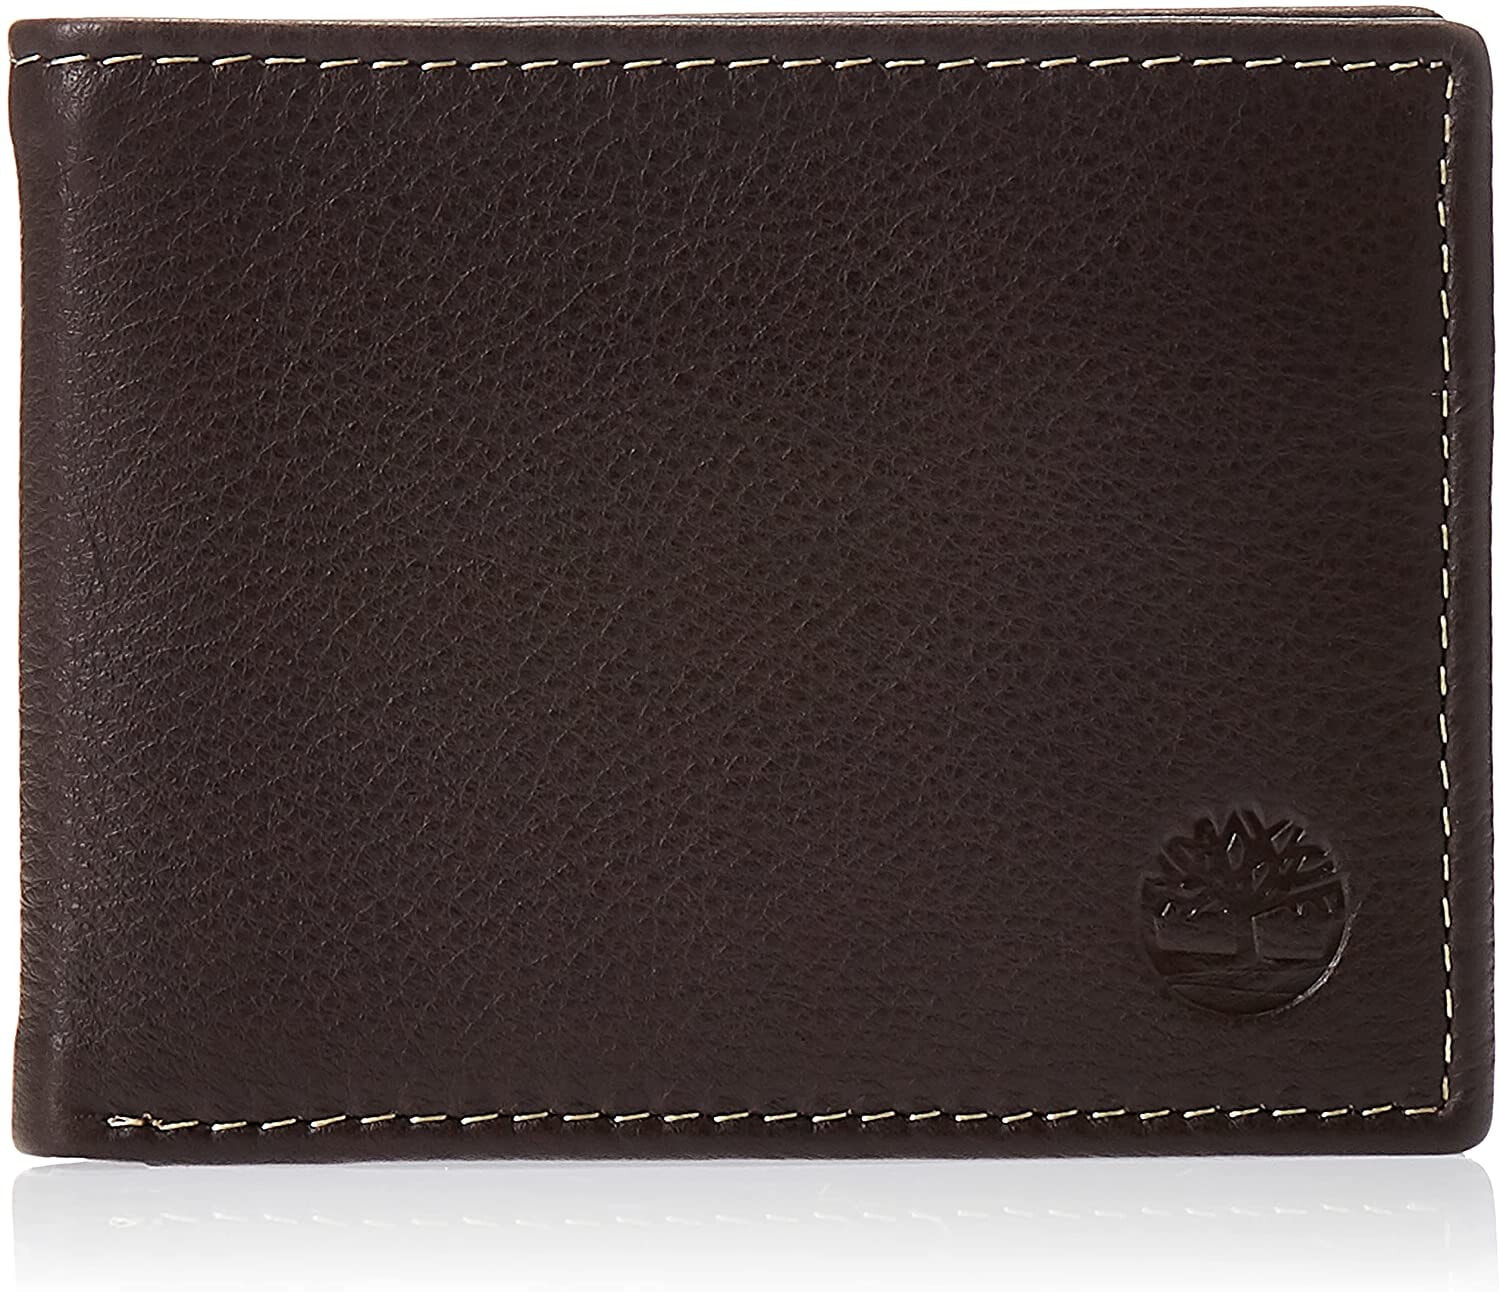 Мужское портмоне кожаное горизонтальное коричневое без застежки Timberland Men's Wellington RFID Leather Bifold Wallet Trifold Wallet Hybrid